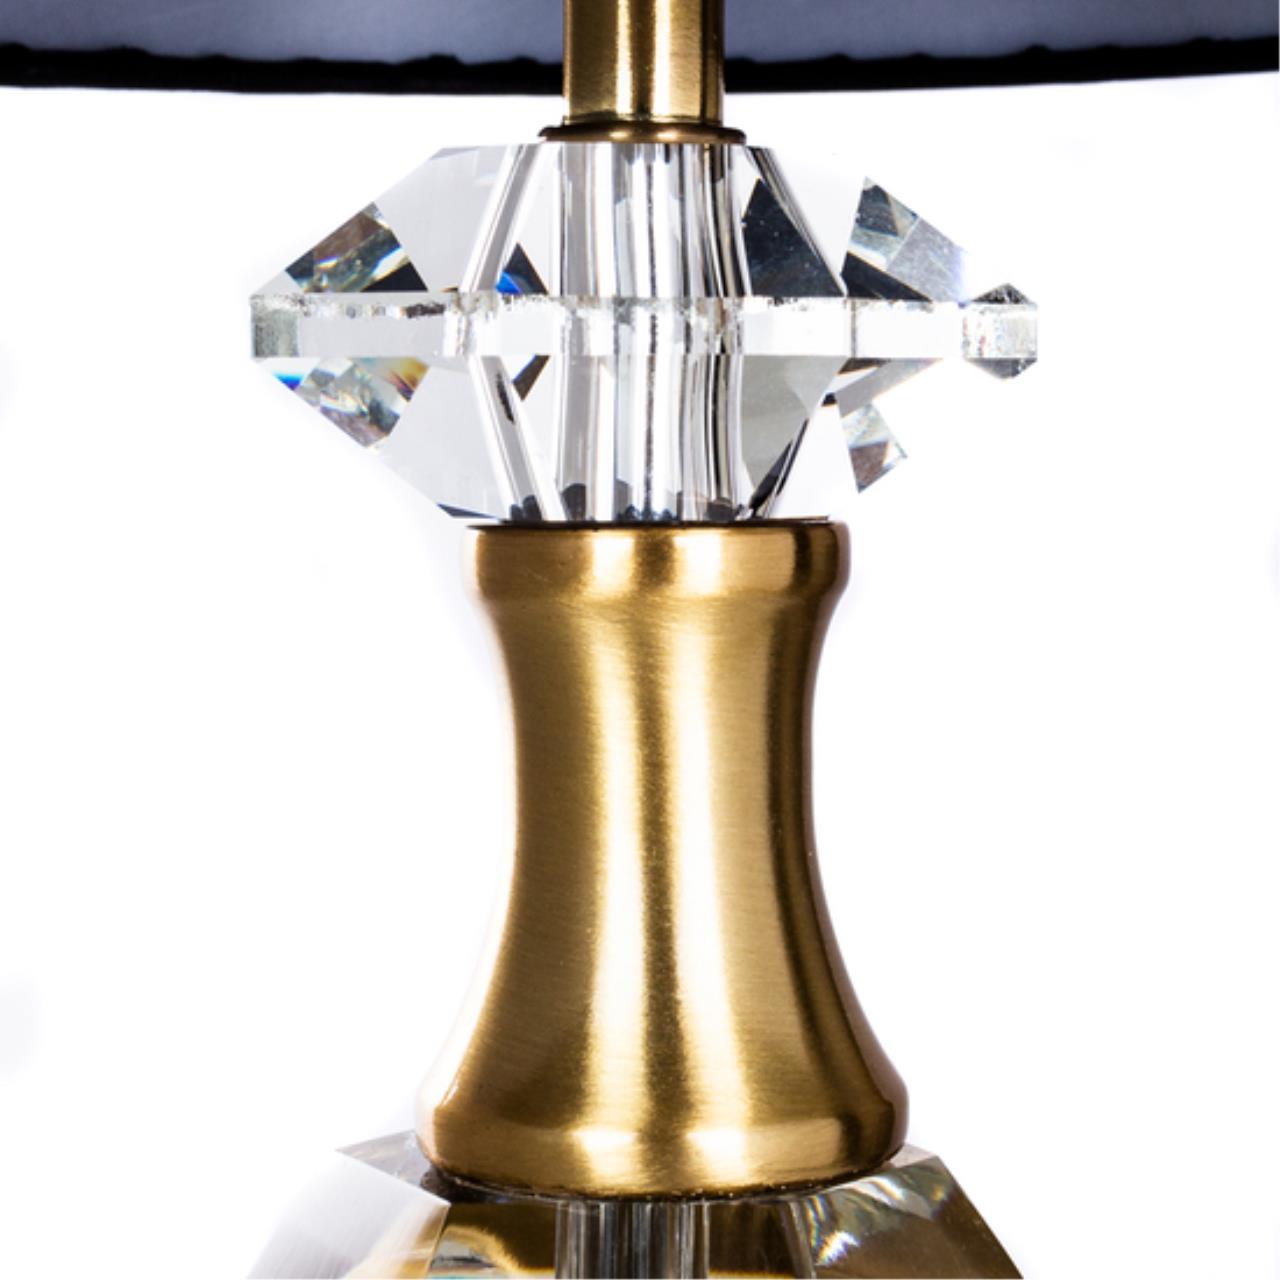 Интерьерная настольная лампа Arte lamp A4025LT-1PB СВЕТИЛЬНИК НАСТОЛЬНЫЙ